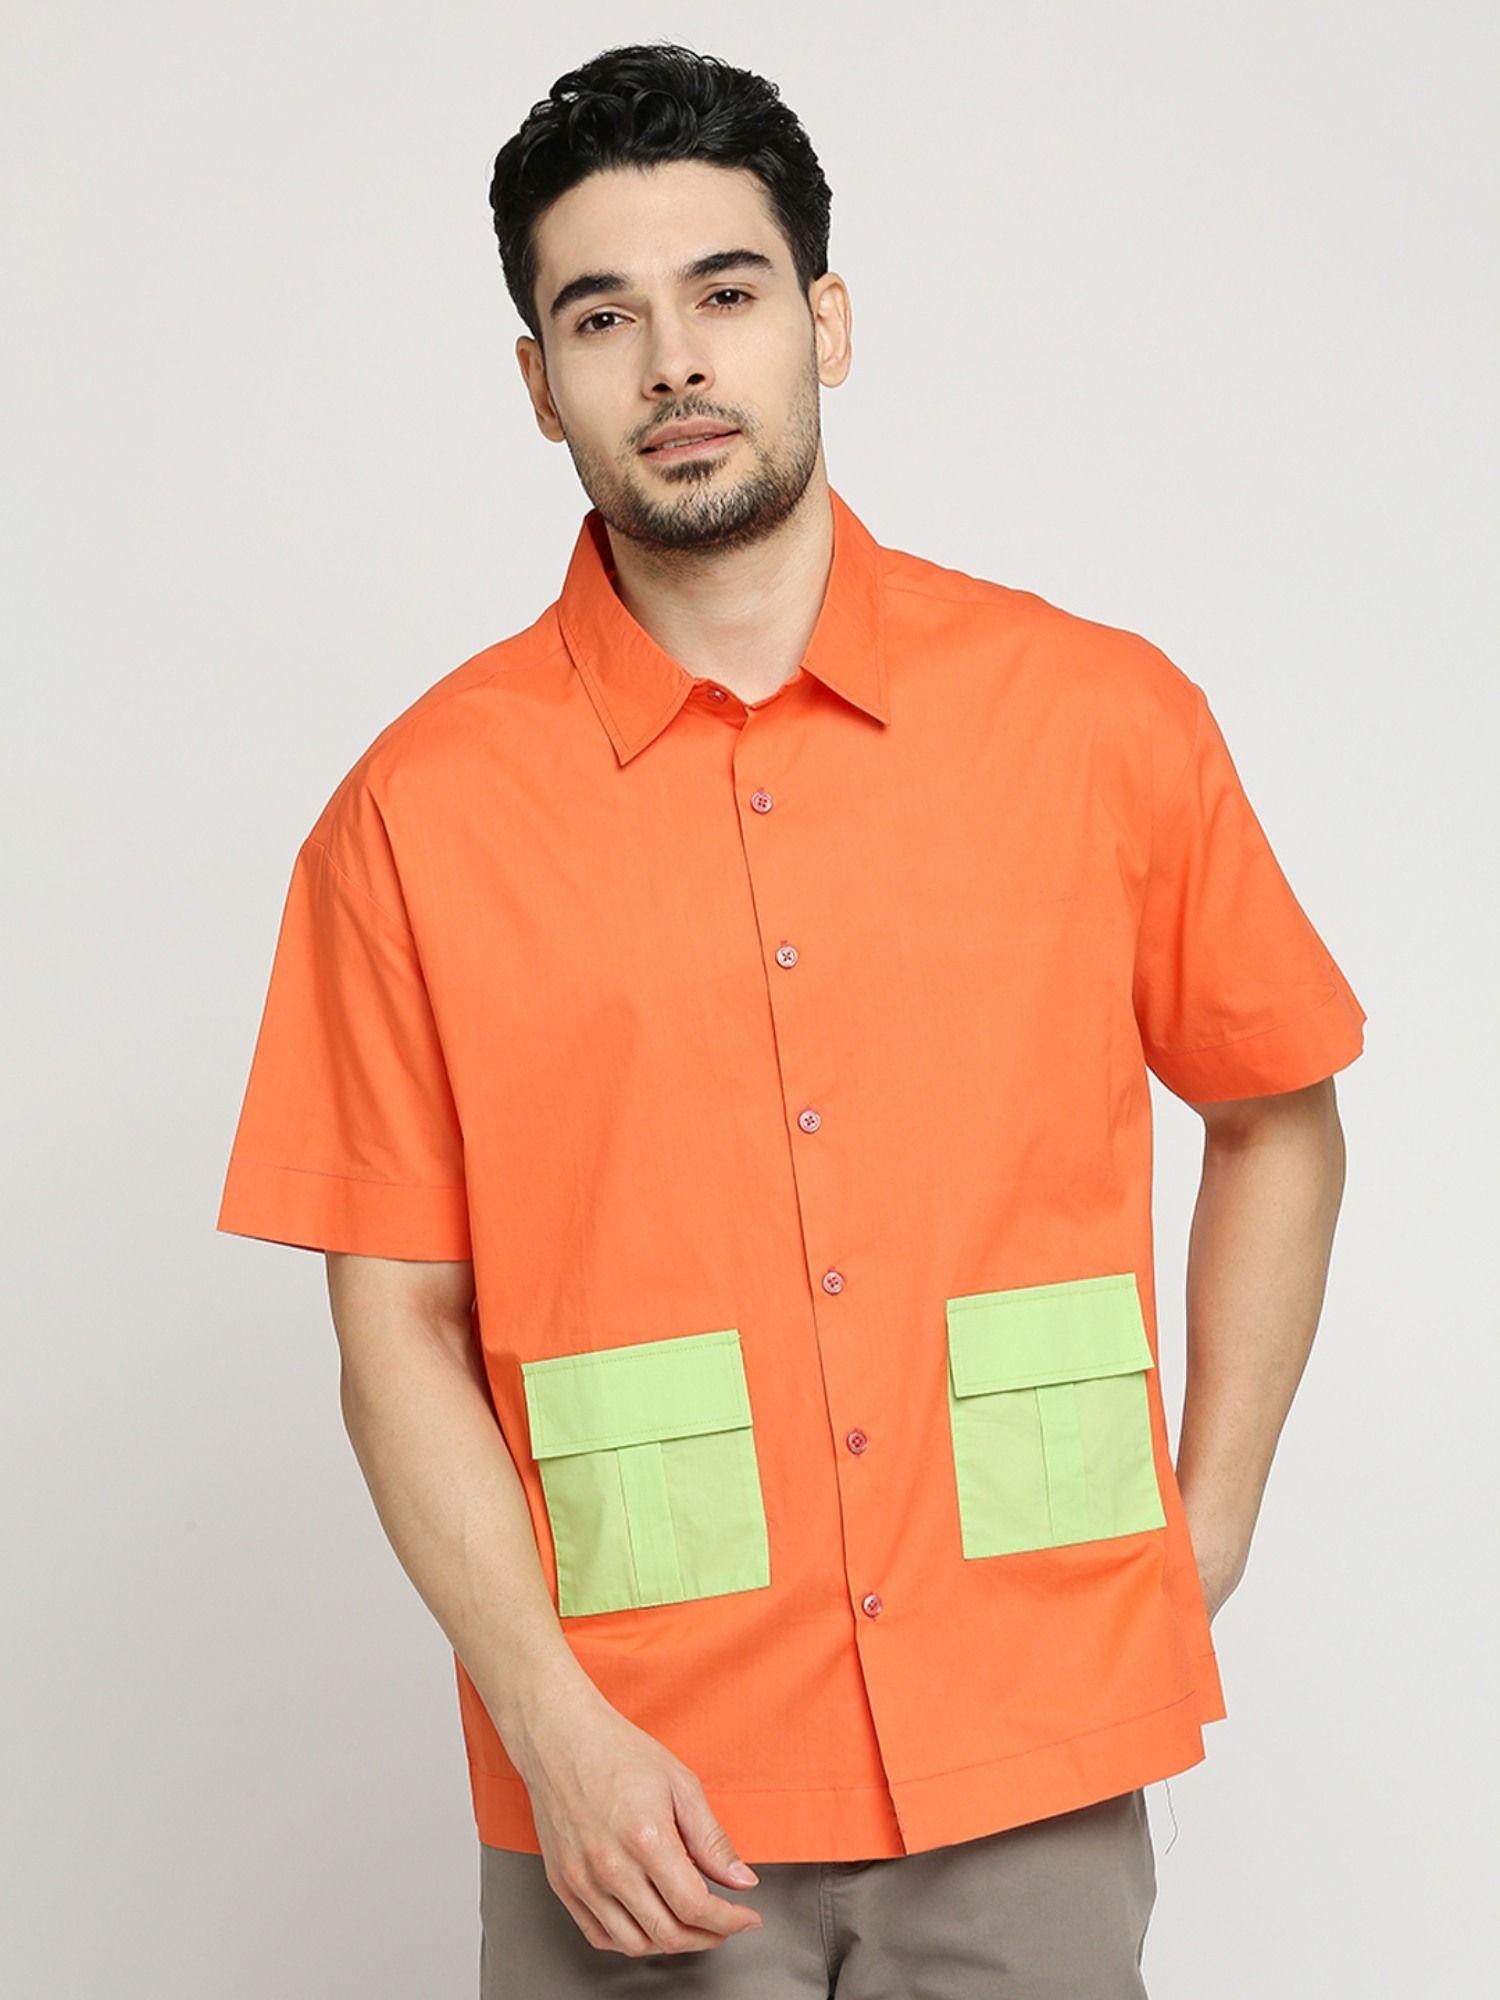 men's-colourblocked-poplin-oversized-fit-half-sleeves-spread-collar-shirt